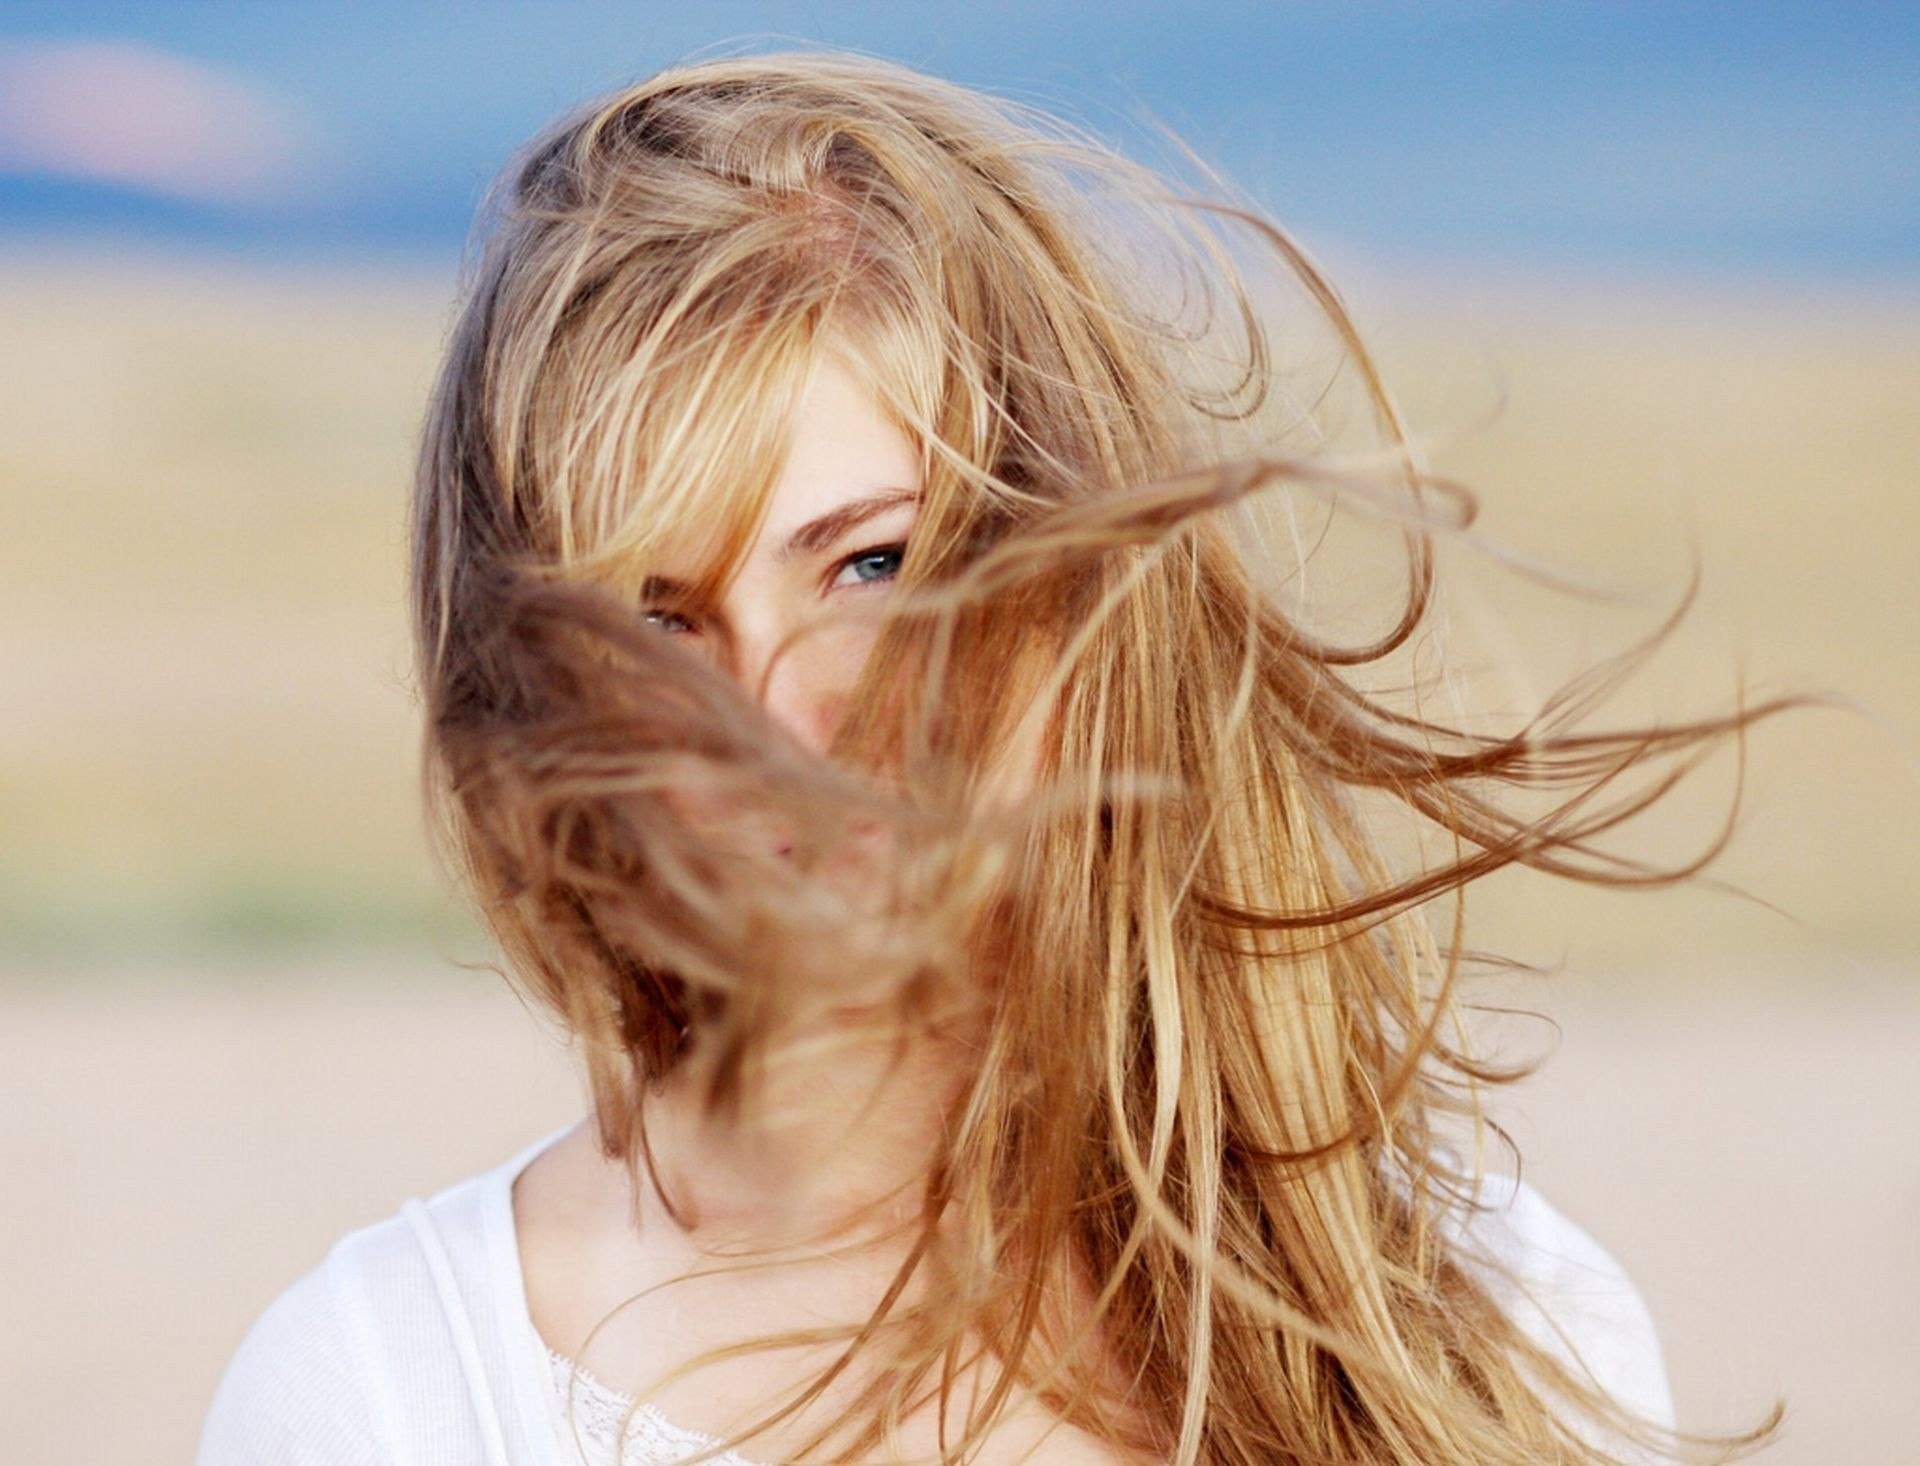 Как стать светлее волосы. Девушка с развевающимися волосами. Развивающиеся волосы. Девушка волосы на ветру. Девушка с распущенными волосами на ветру.